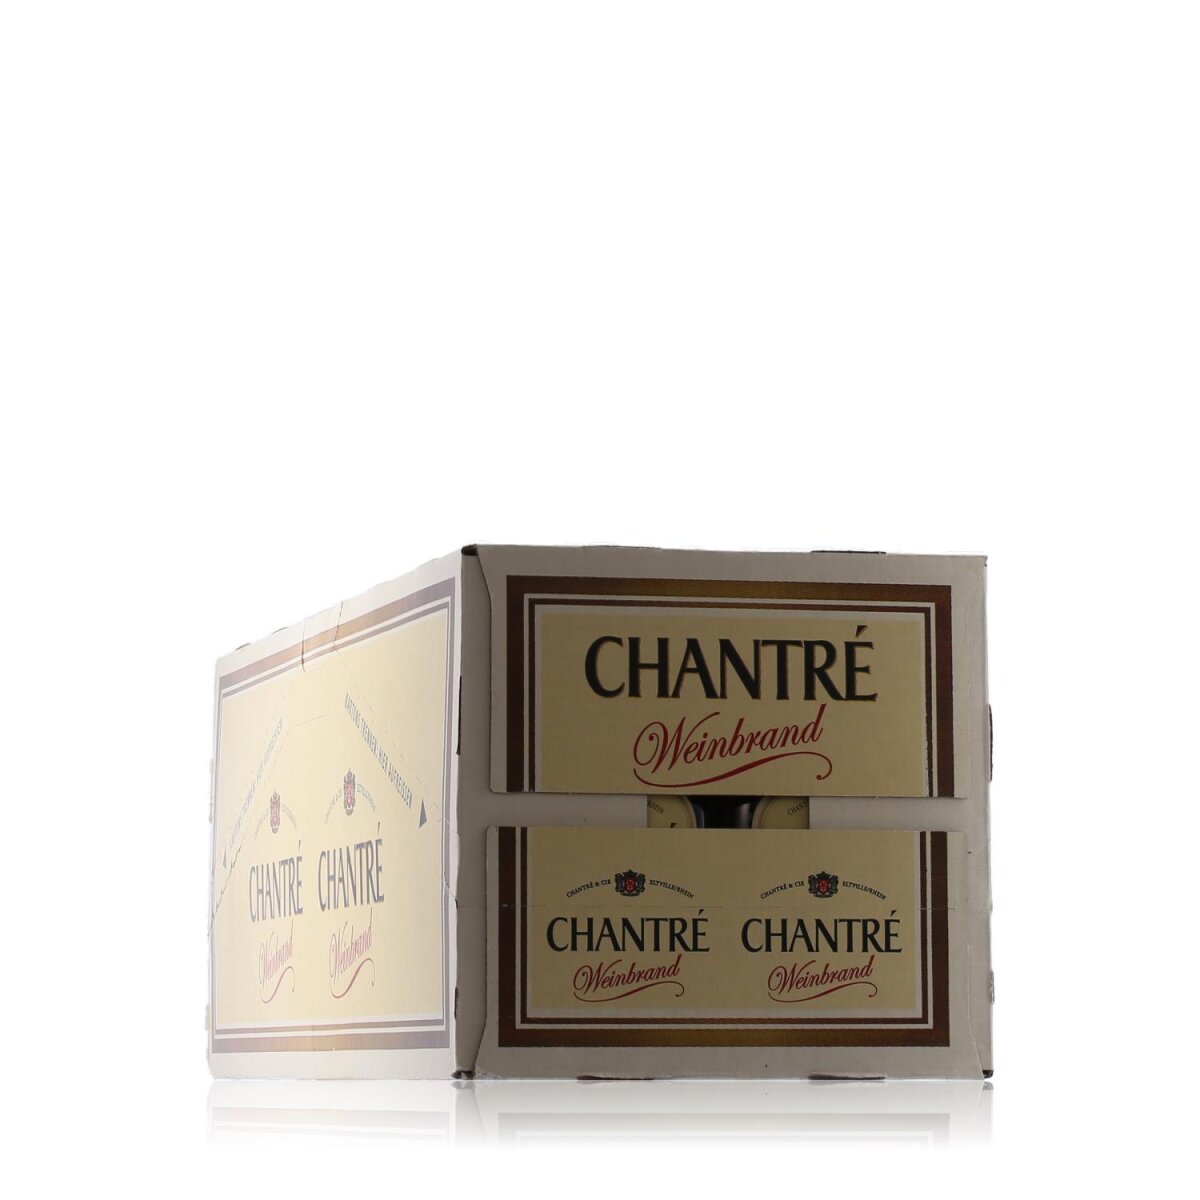 Vol. 36% Miniaturen Chantré 24x0,1l Weinbrand